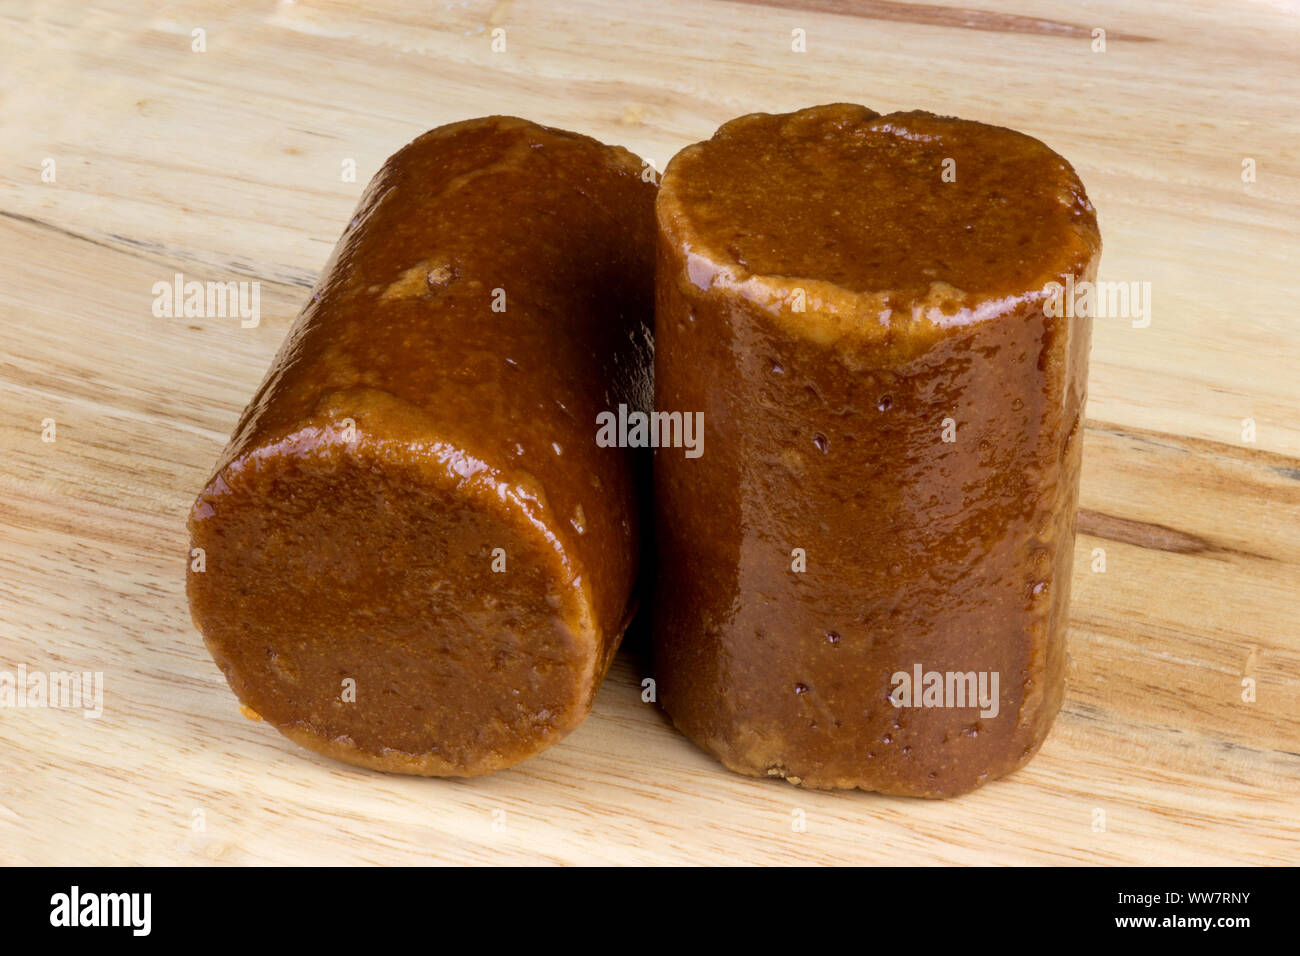 Malaysian palm sugar or Gula Melaka on a wooden surface Stock Photo